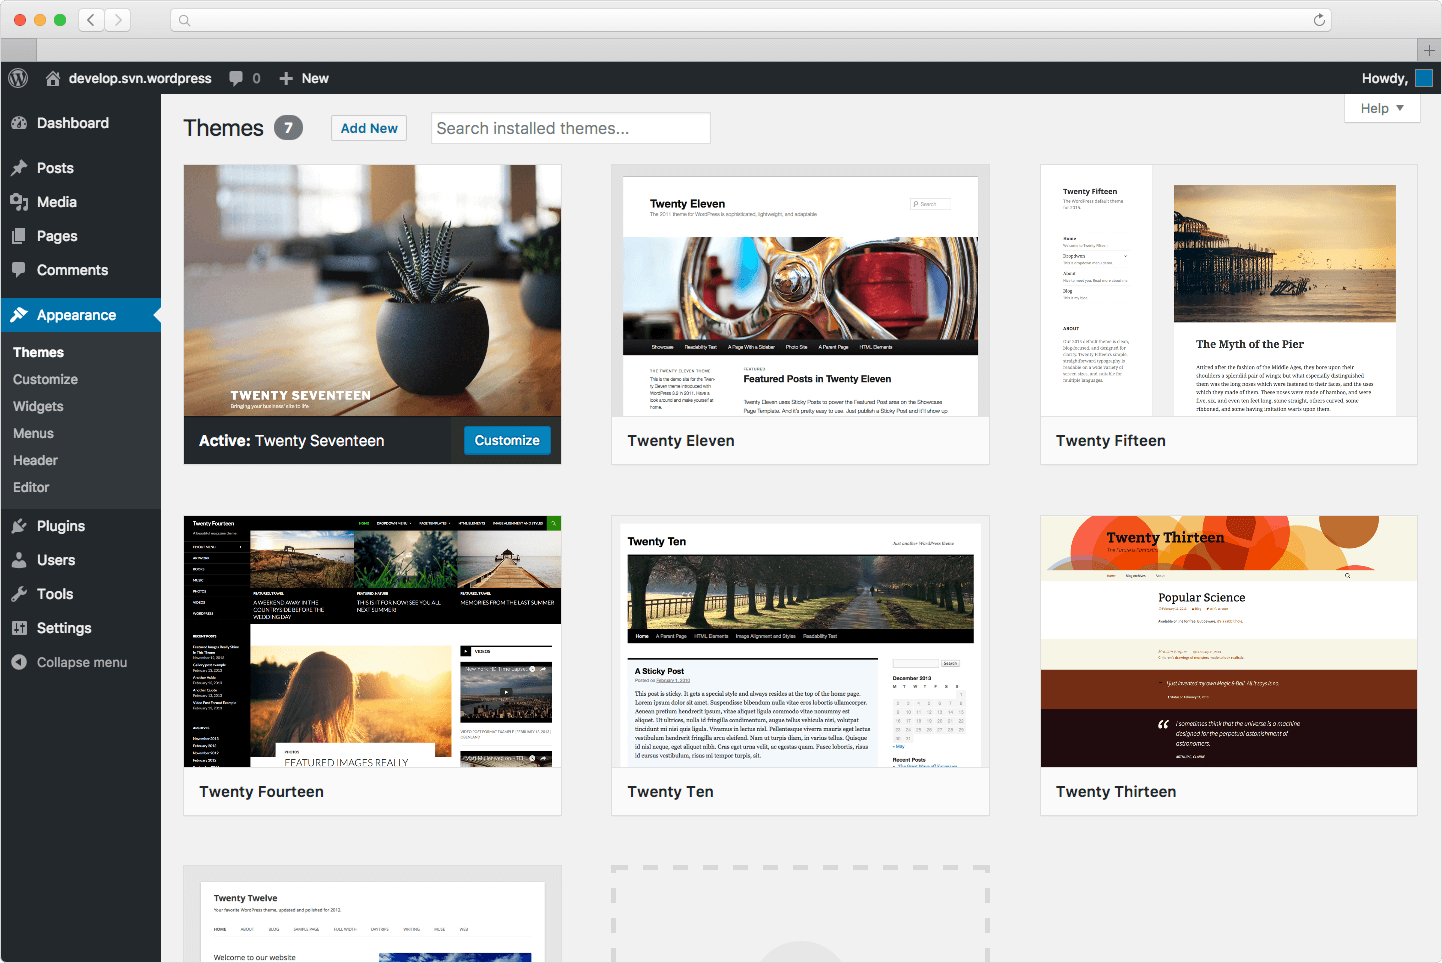 Create your own portfolio blog with WordPress